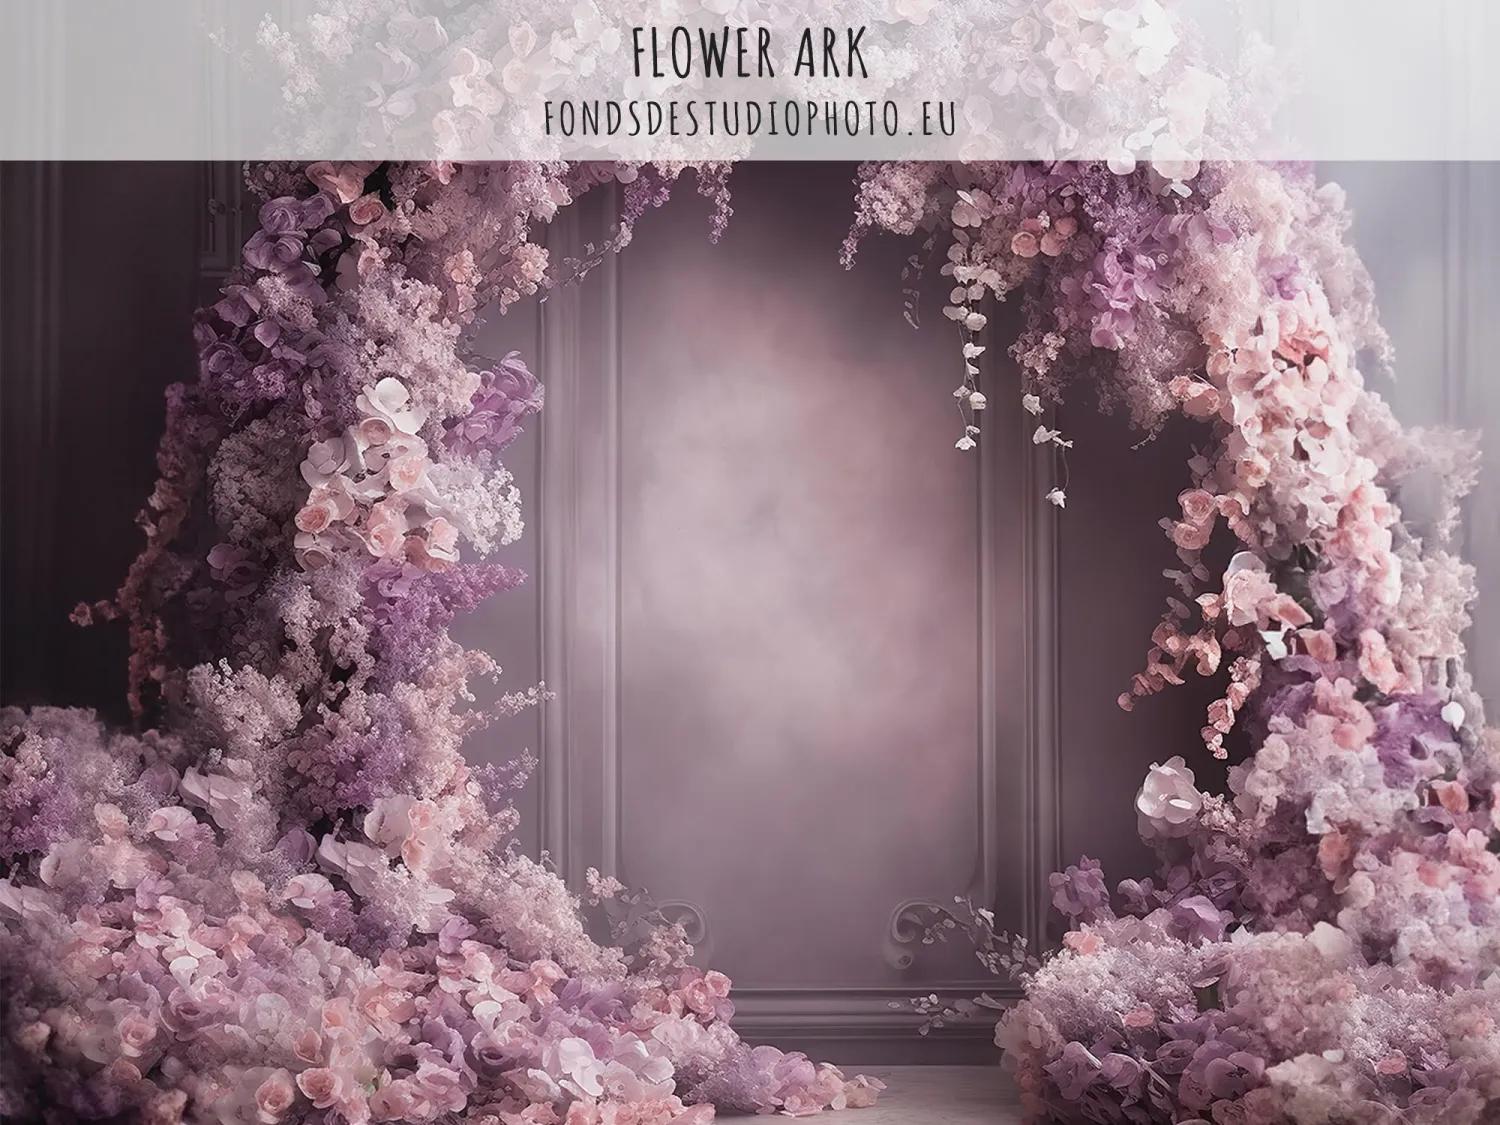 Flower Ark